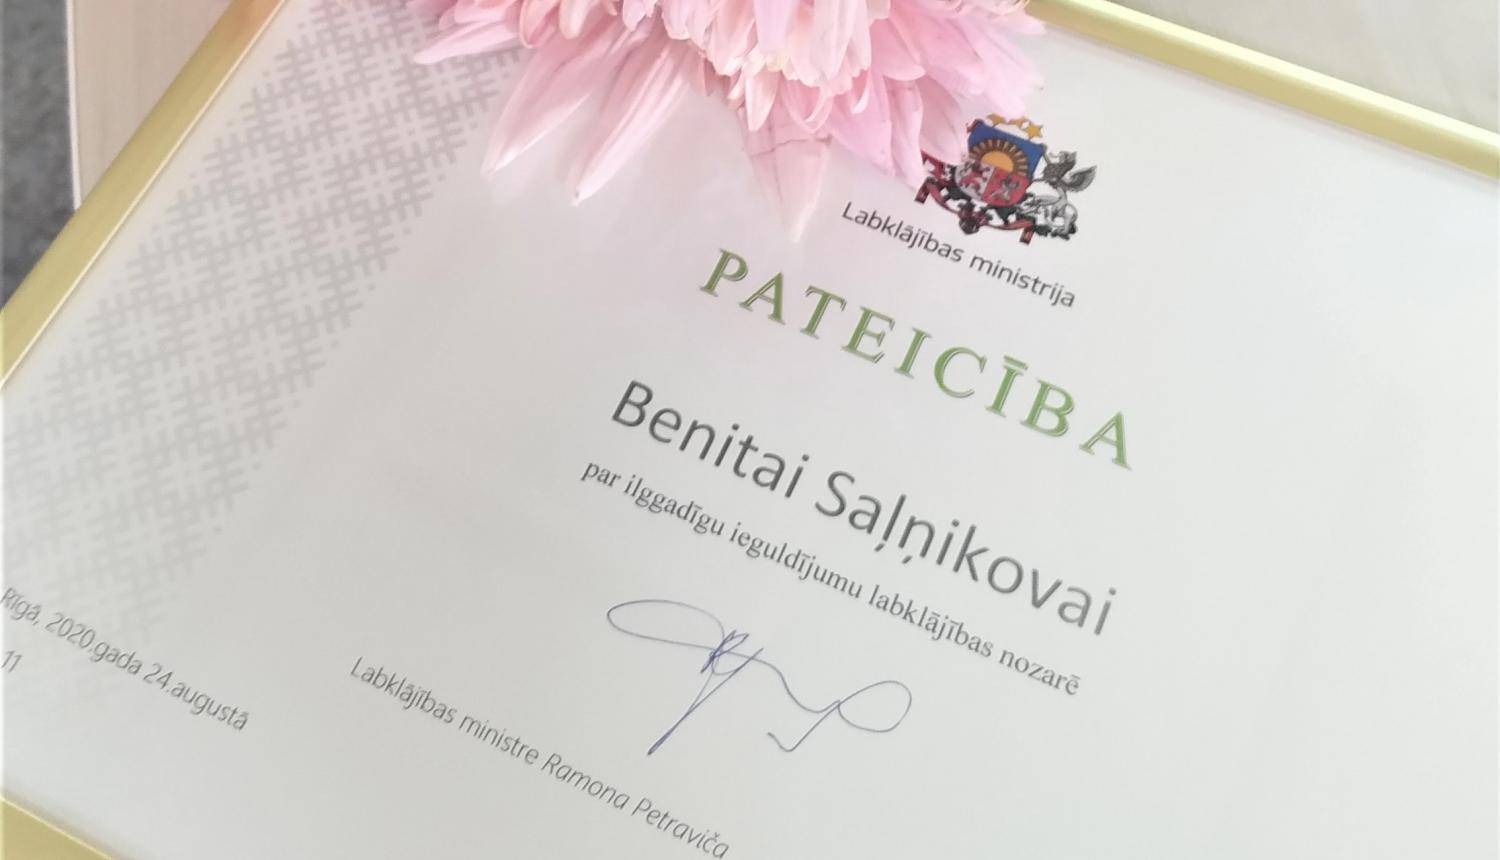 Foto: NVA Ventspils filiāles vadītājai Benitai Saļņikovai pasniegts Labklājības ministrijas Pateicības raksts par ilggadīgu ieguldījumu labklājības nozarē